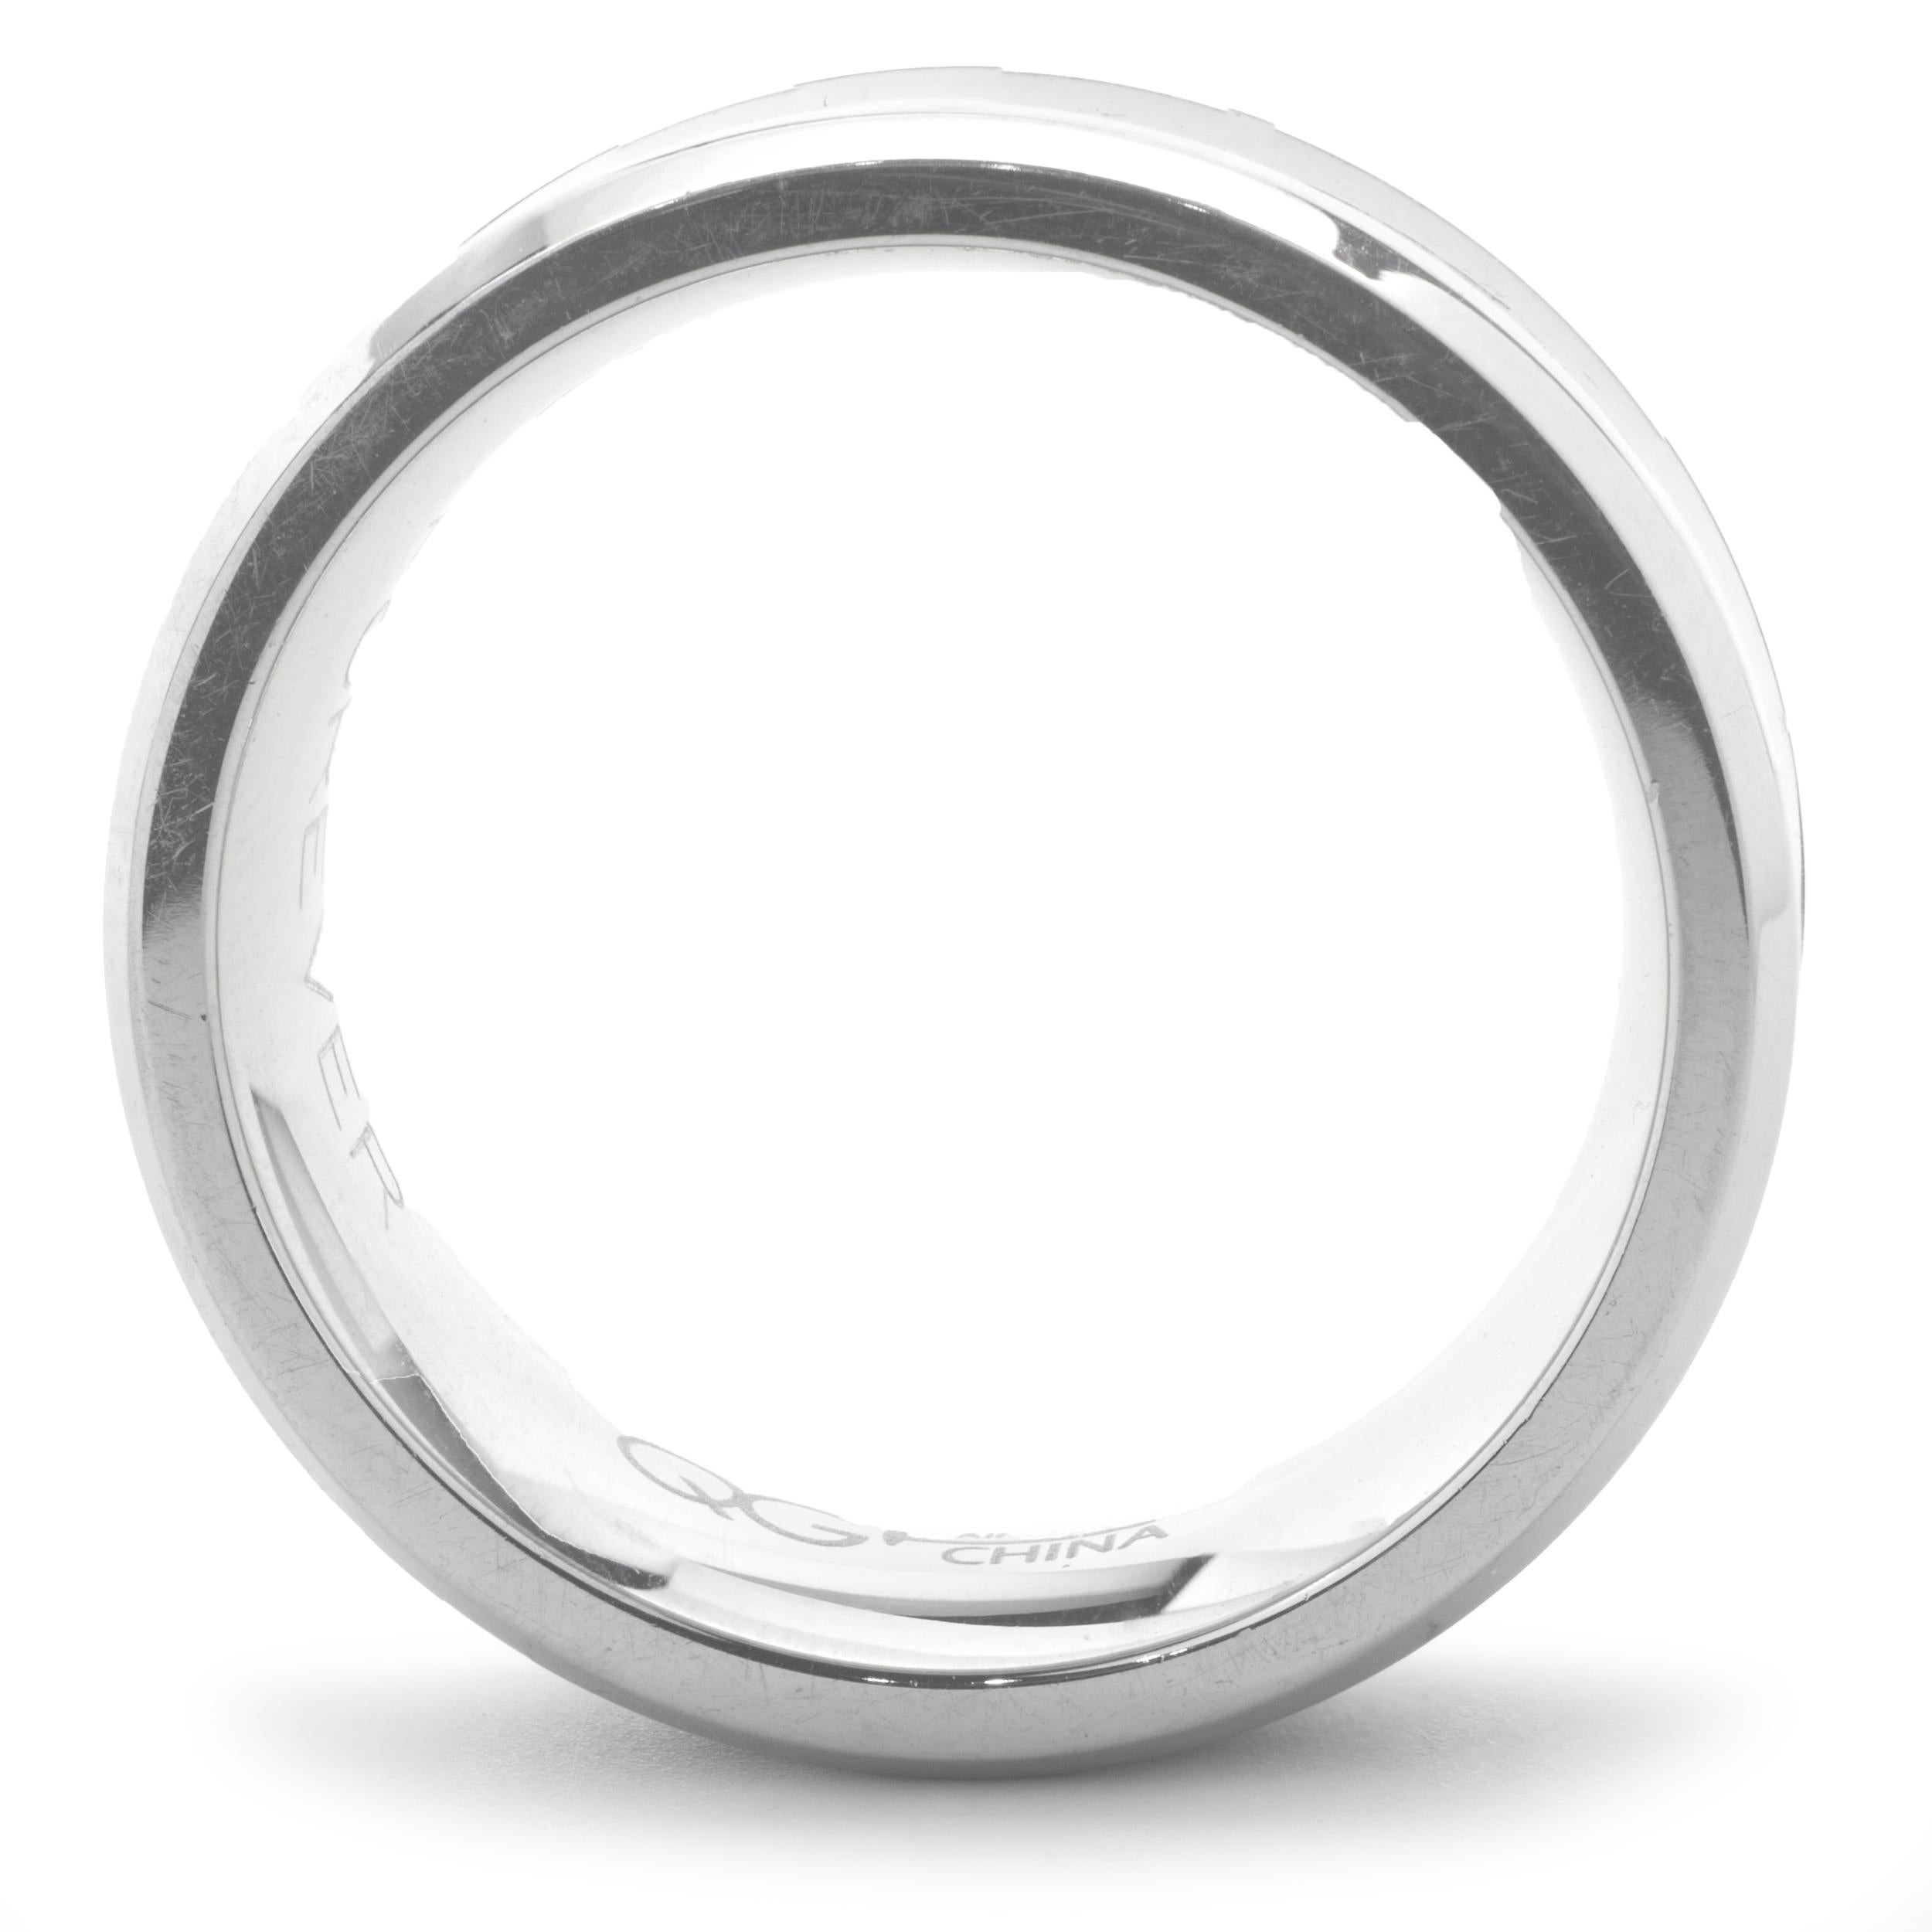 Designer : custom 
Matériau : Acier inoxydable
Dimensions : la bande fait 8 mm de large 
Taille de l'anneau : 8.5
Poids : 6,55 grammes
